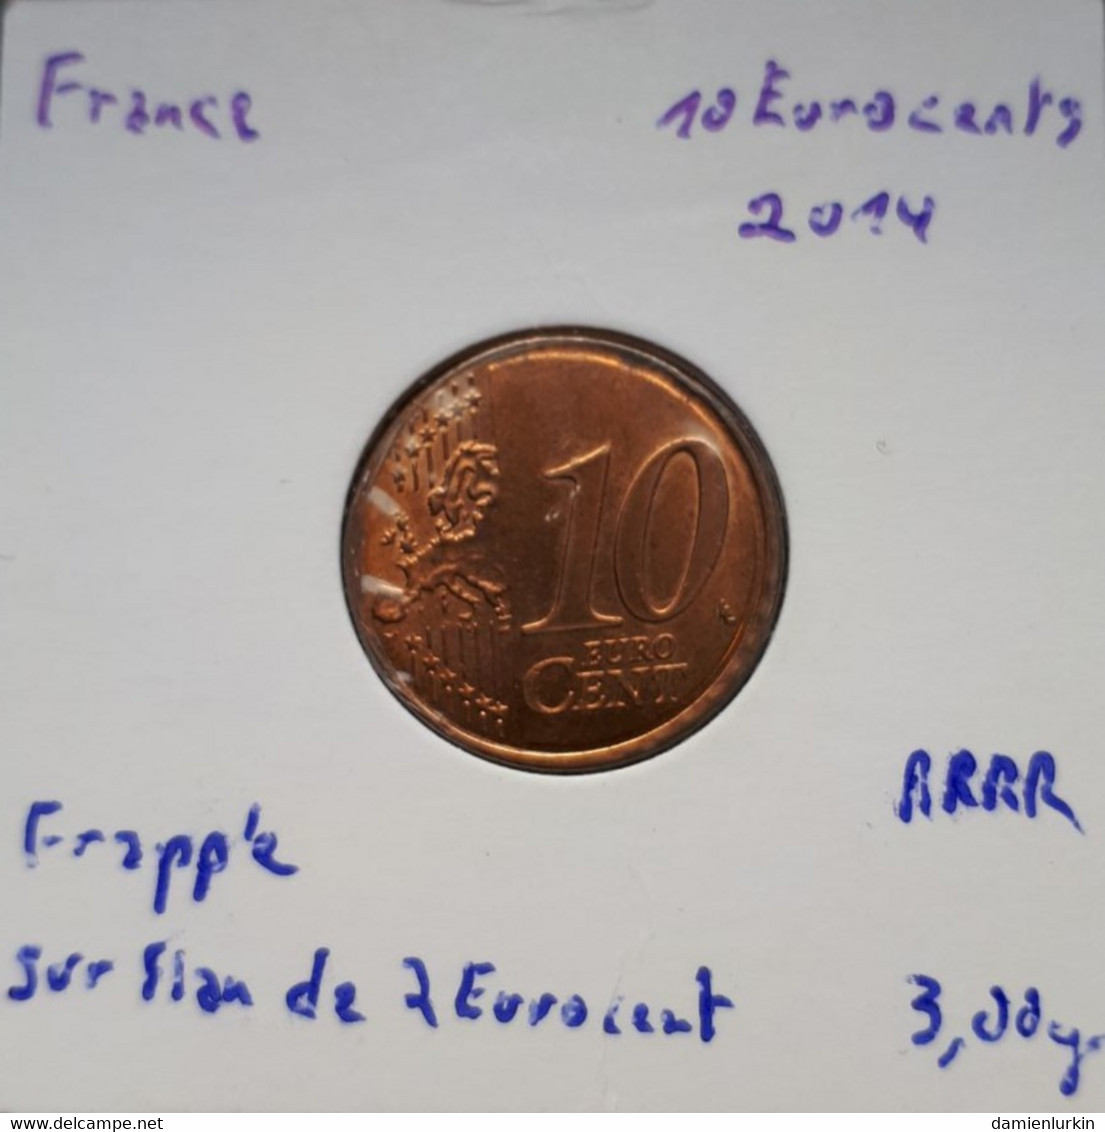 --PROMO 300€-- FRANCE EXCEPTIONNELLE 10 EURO CENT 2014 FRAPPEE SUR FLAN CUIVRE NON METALLIQUE !!!!! --LIRE DESCRIPTIF-- - Errors And Oddities